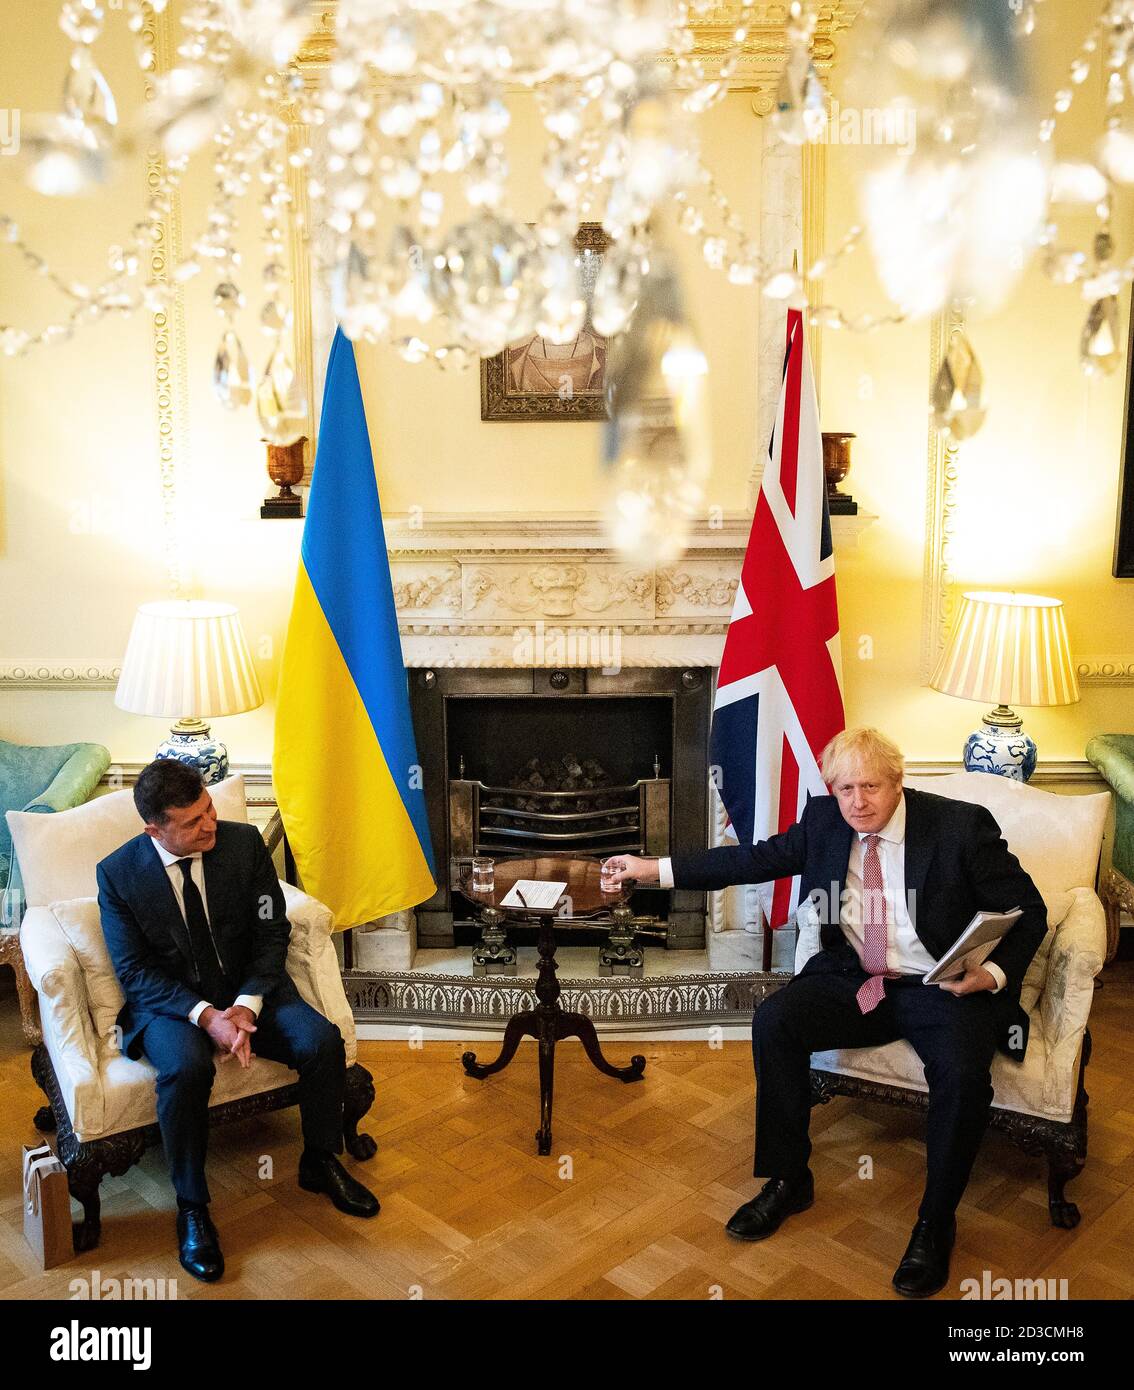 Il primo Ministro Boris Johnson (destra) durante un incontro con il Presidente dell'Ucraina, Volodymyr Zelenskyy a Downing Street , Londra, per firmare un accordo di partenariato strategico con il presidente di fronte al 'comportamento stabilizzante' della Russia nei confronti del paese. Foto Stock